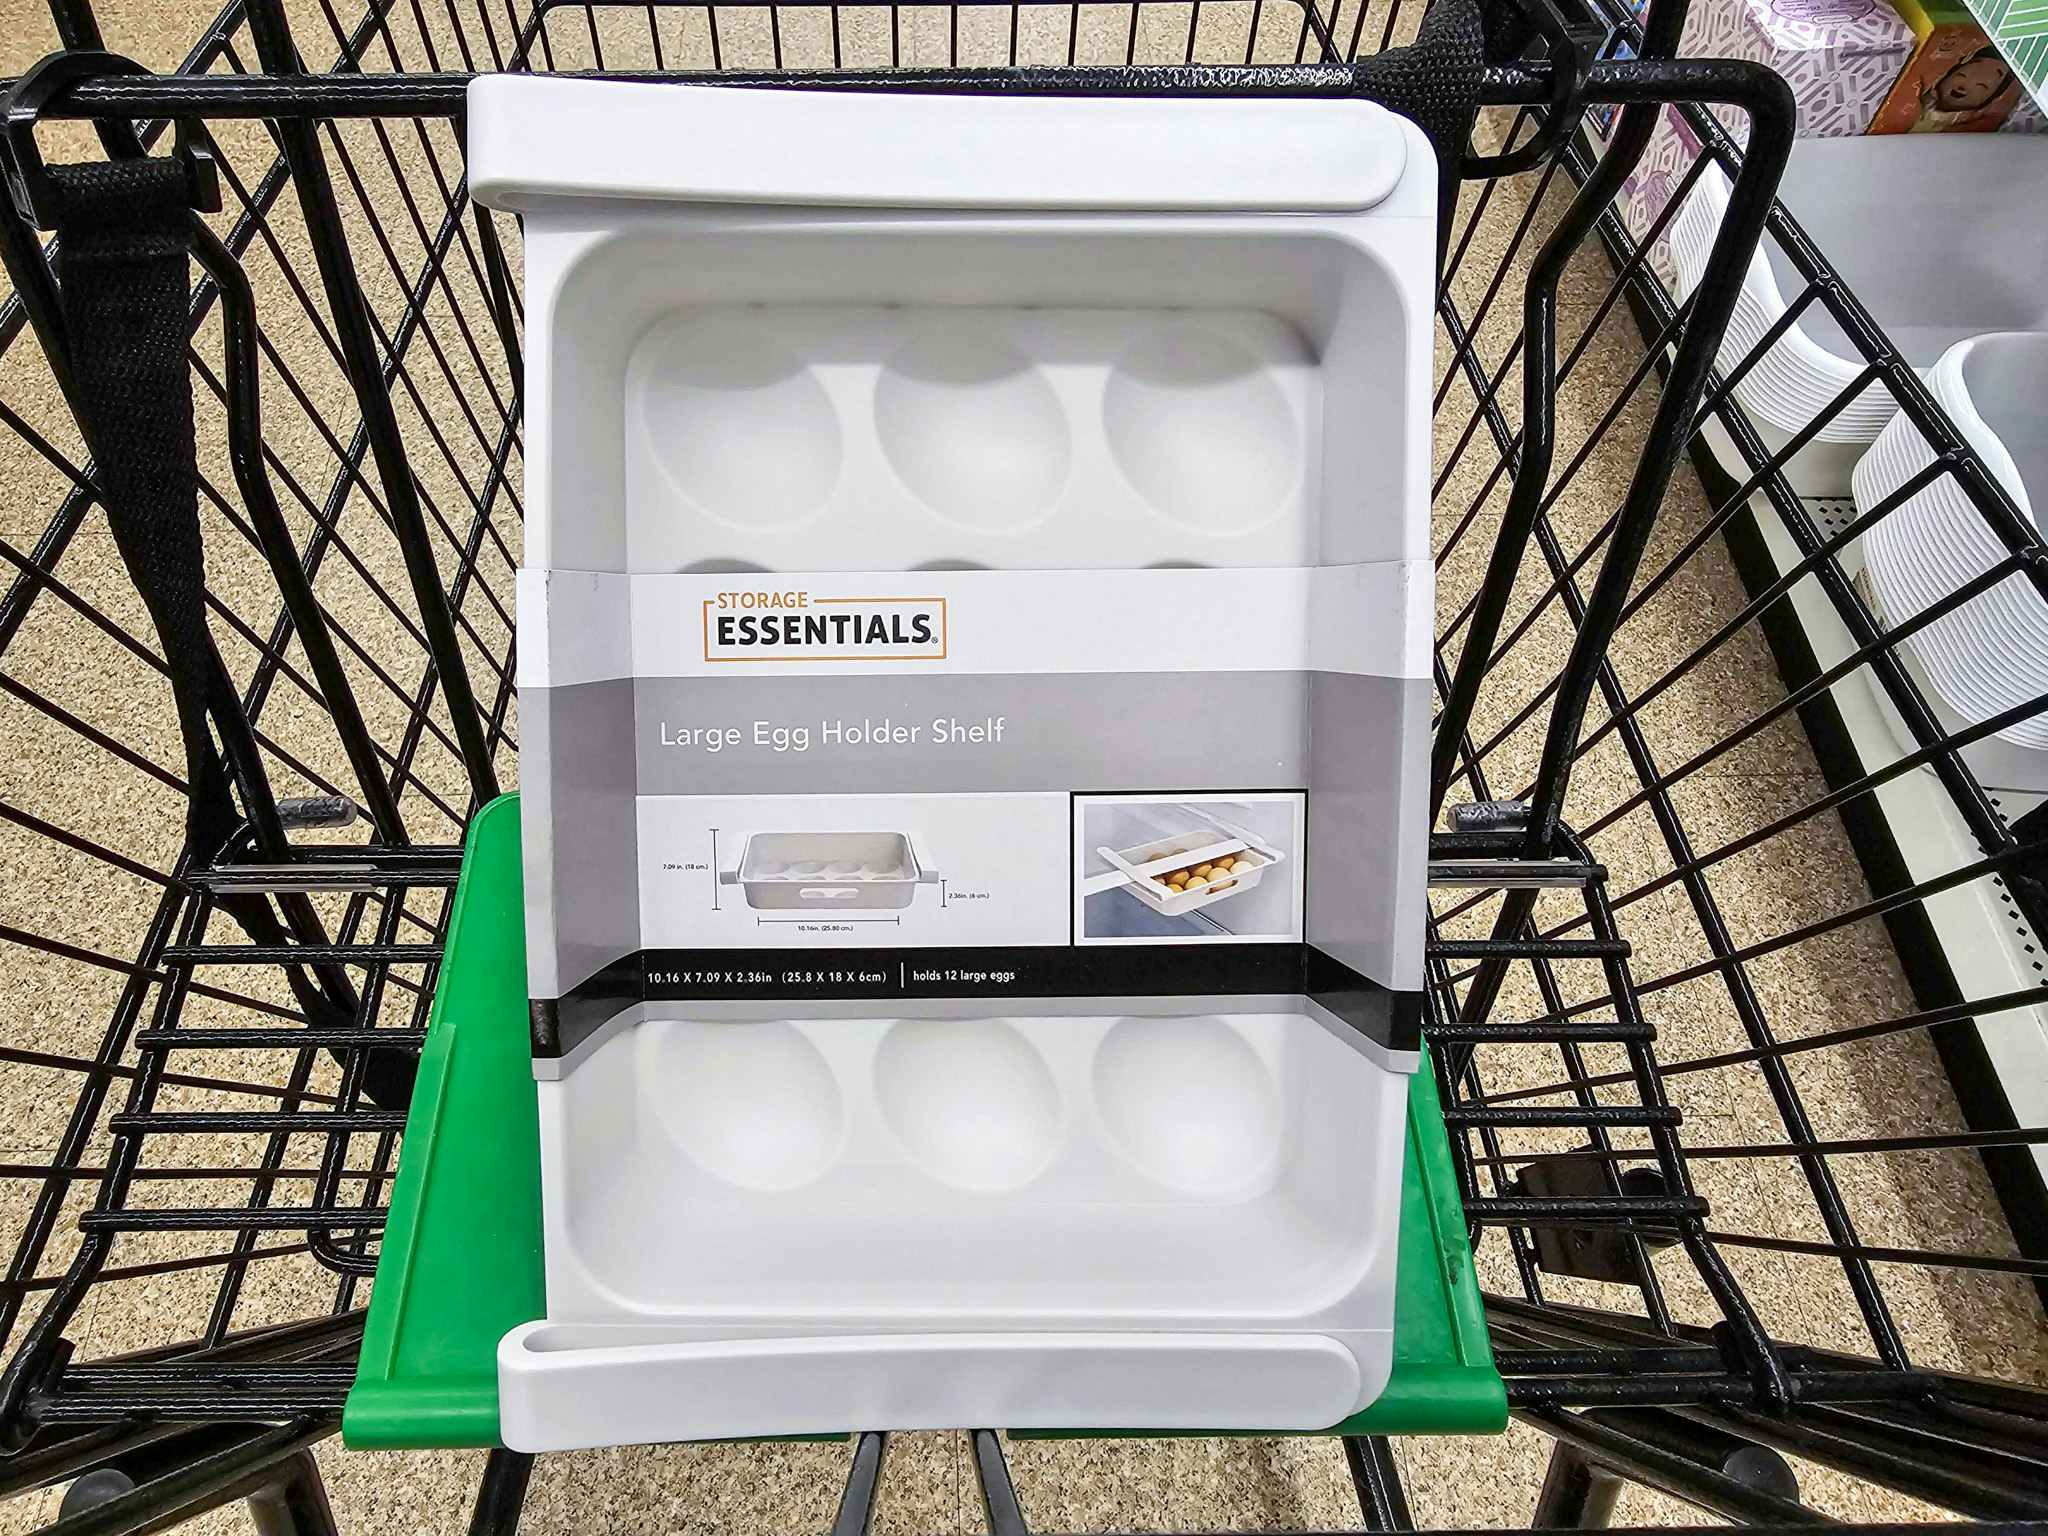 egg holder shelf in a cart